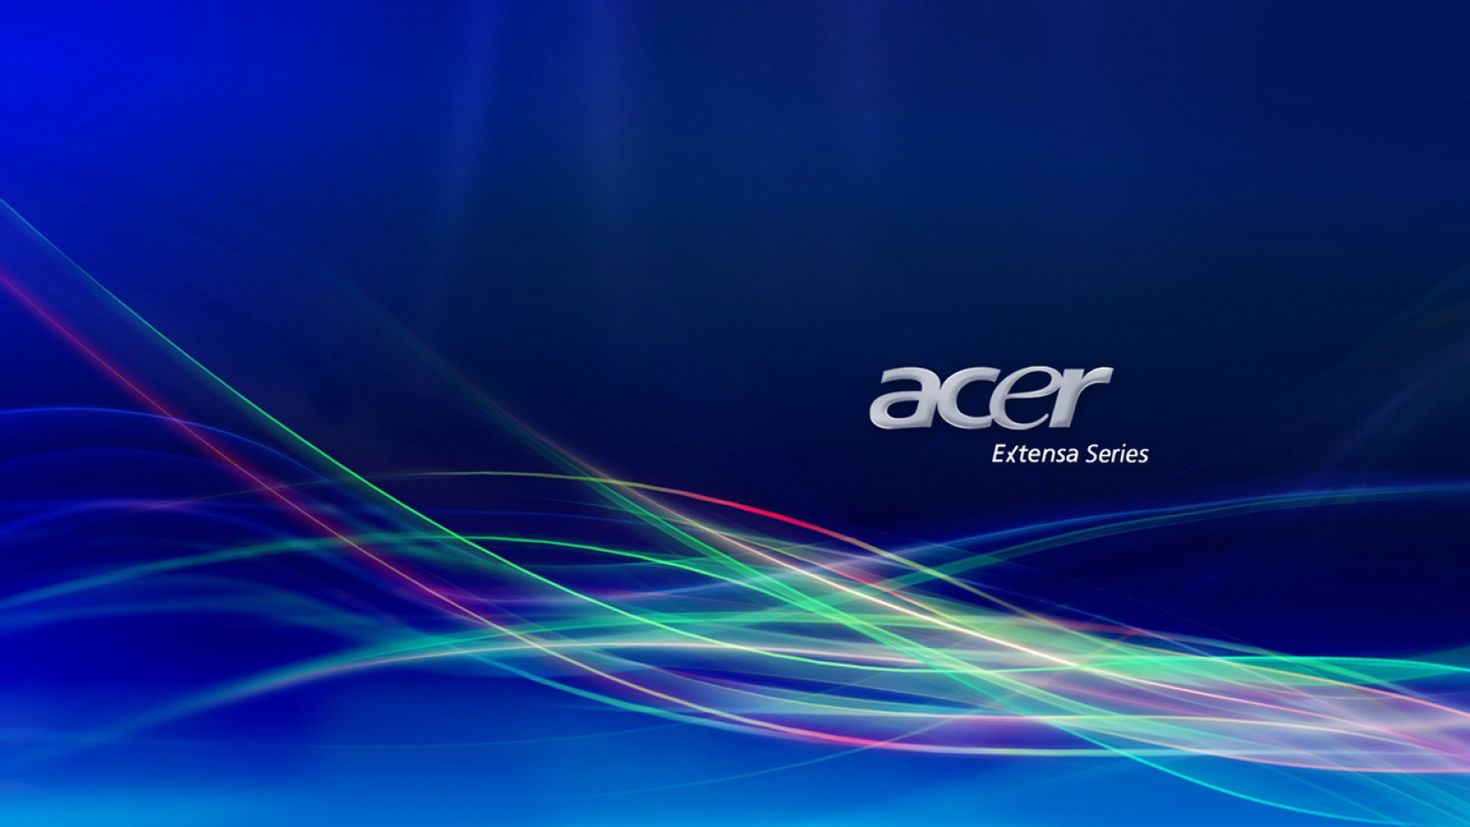 Размер обоев на рабочий стол. Acer Aspire 1920x1080. Обои Acer Aspire 5750g. Обои Acer Aspire 7. Acer Aspire 1080p.